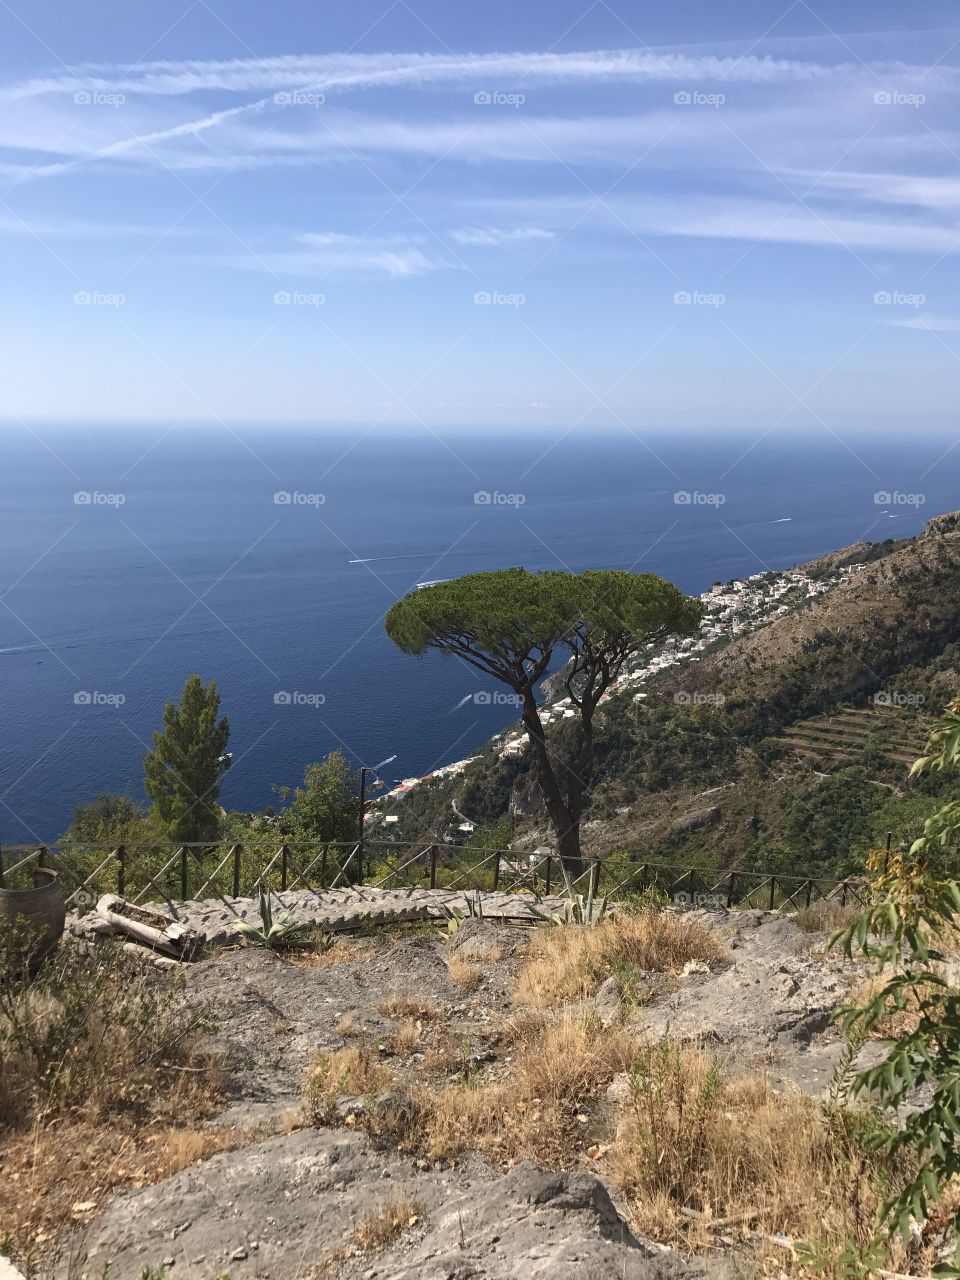 Tree on the Amalfi coast stunning